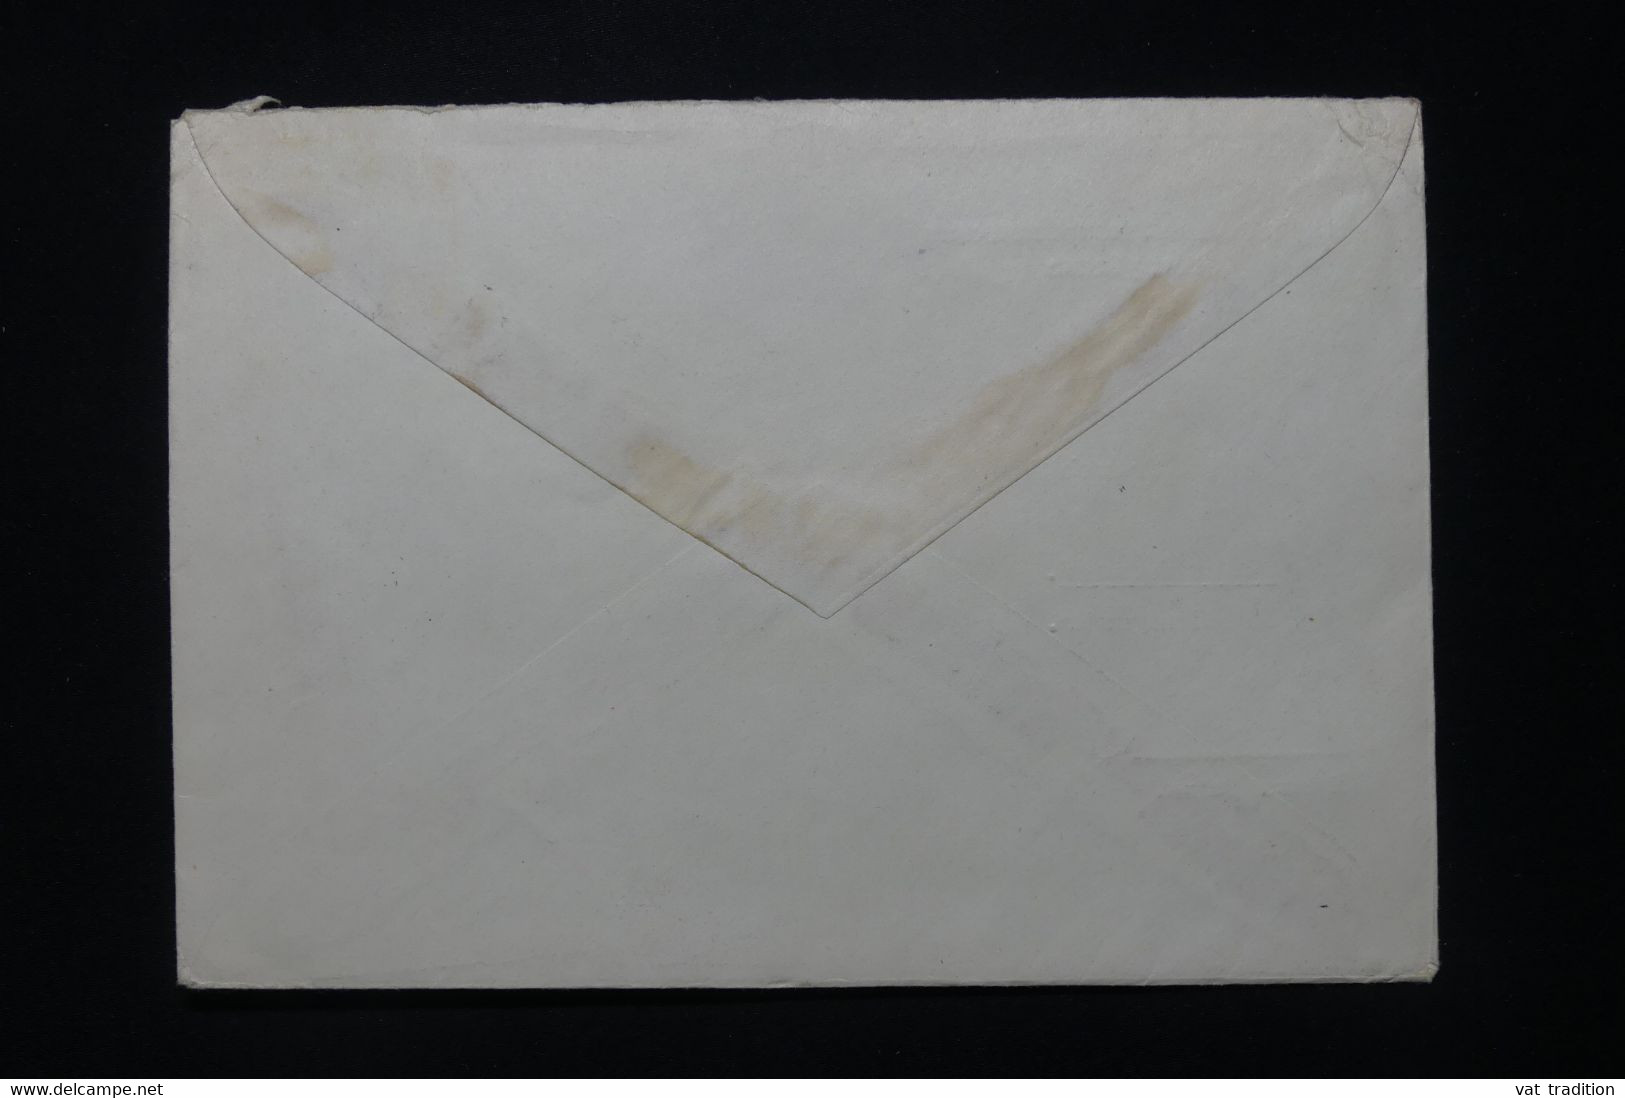 U.R.S.S. - Enveloppe De Moscou Pour L 'Allemagne En 1953 - L 92339 - Briefe U. Dokumente